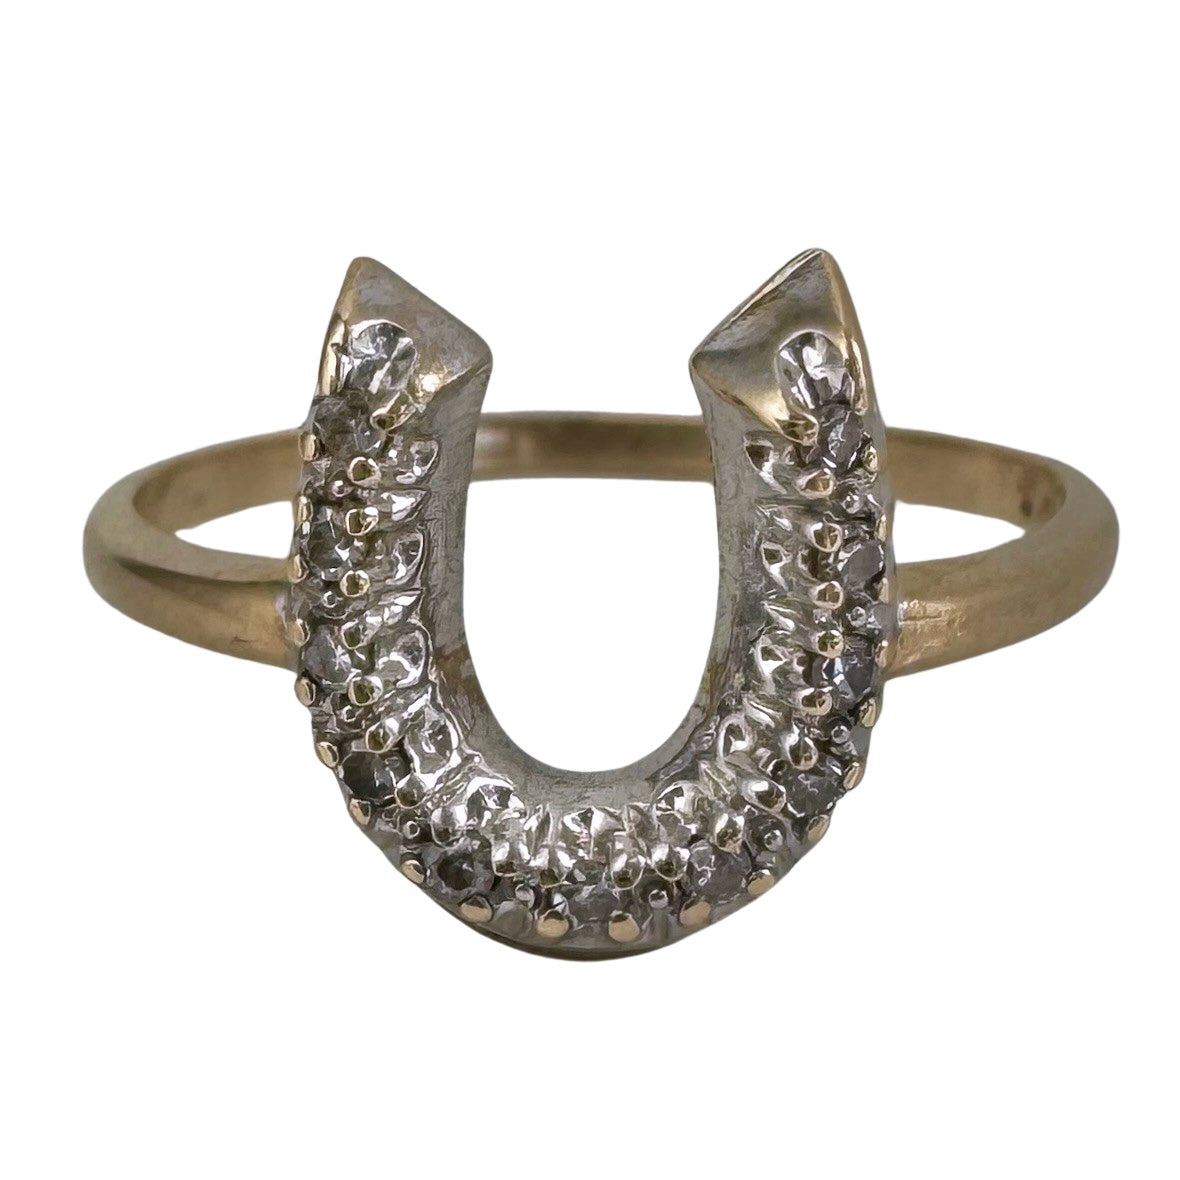 P R E - L O V E D // full of luck / 10k yellow and white gold horseshoe ring with diamonds / size 6